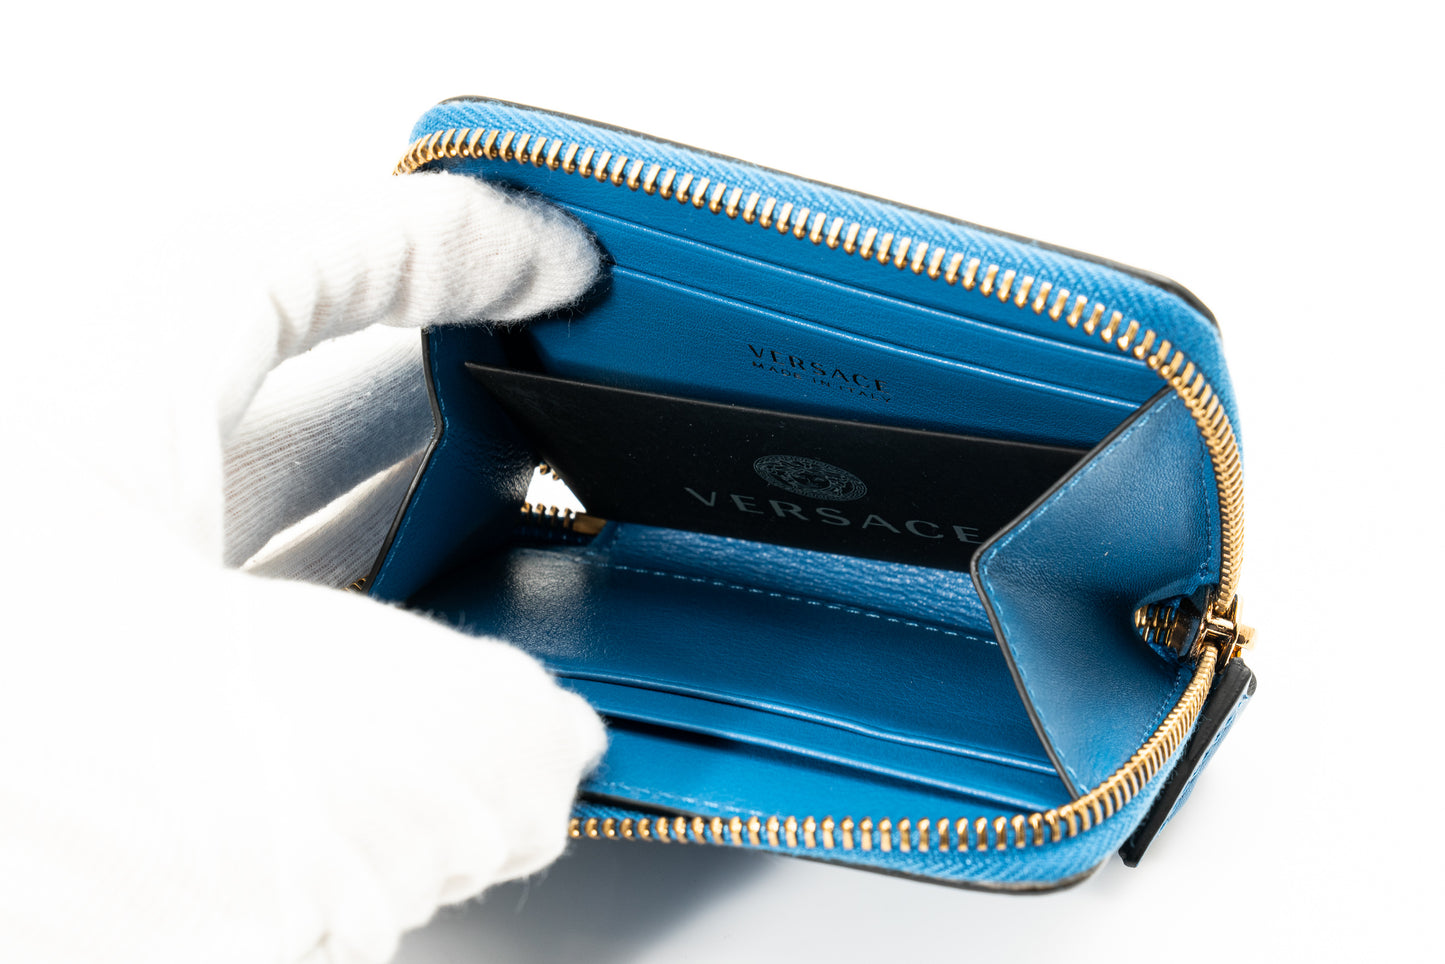 Versace Wallet